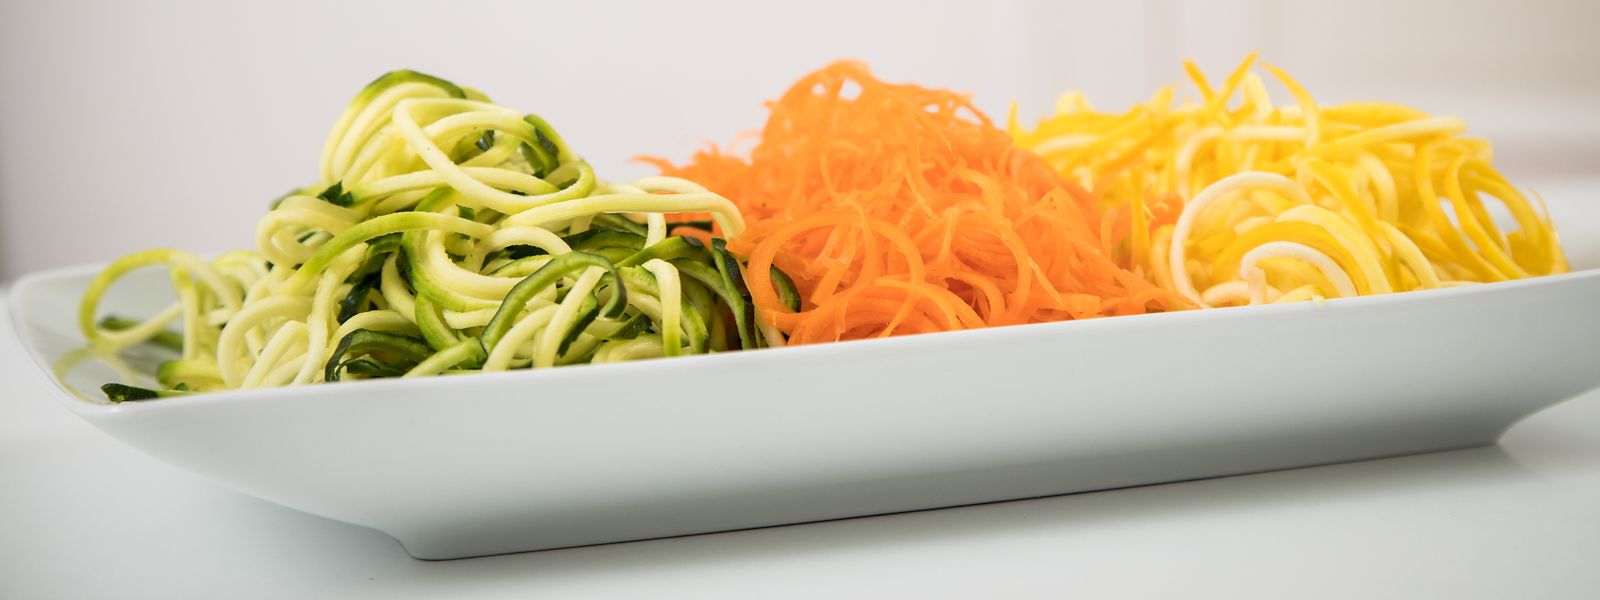 Wenn die Zucchini oder die Möhre als Spaghetti daherkommt: In der rohköstlichen Küche geht es oft kreativ zu.